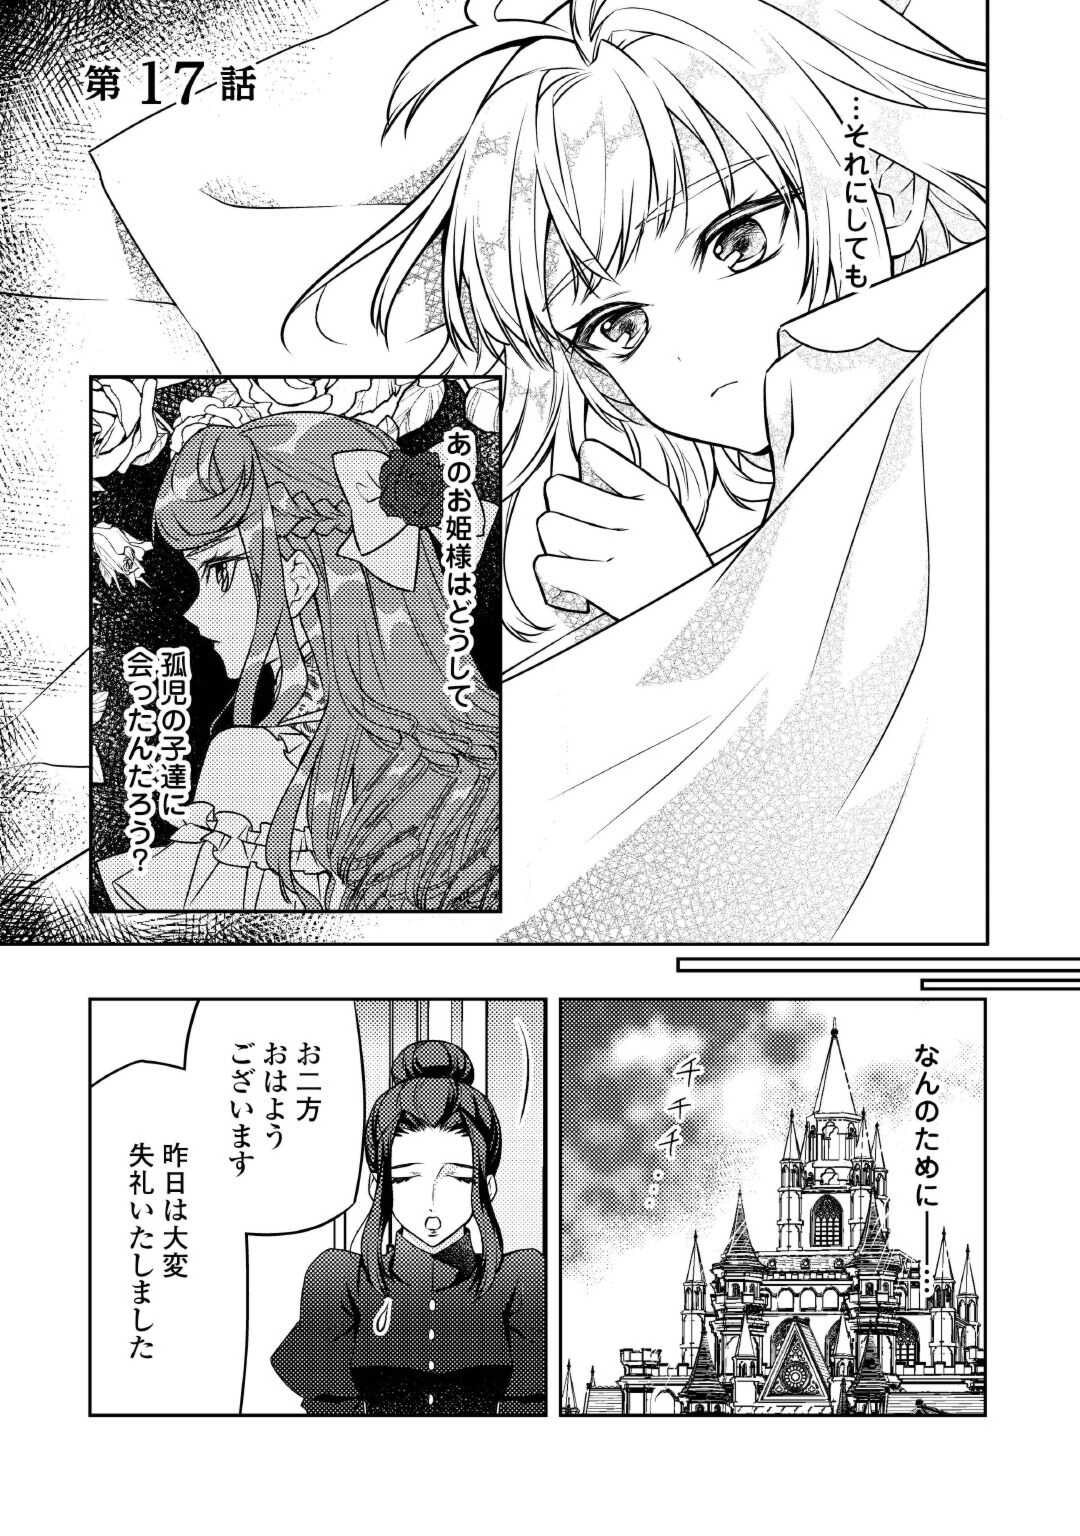 Toaru Chisana Mura No Chi Tona Tanya Ya San - Chapter 17 - Page 1